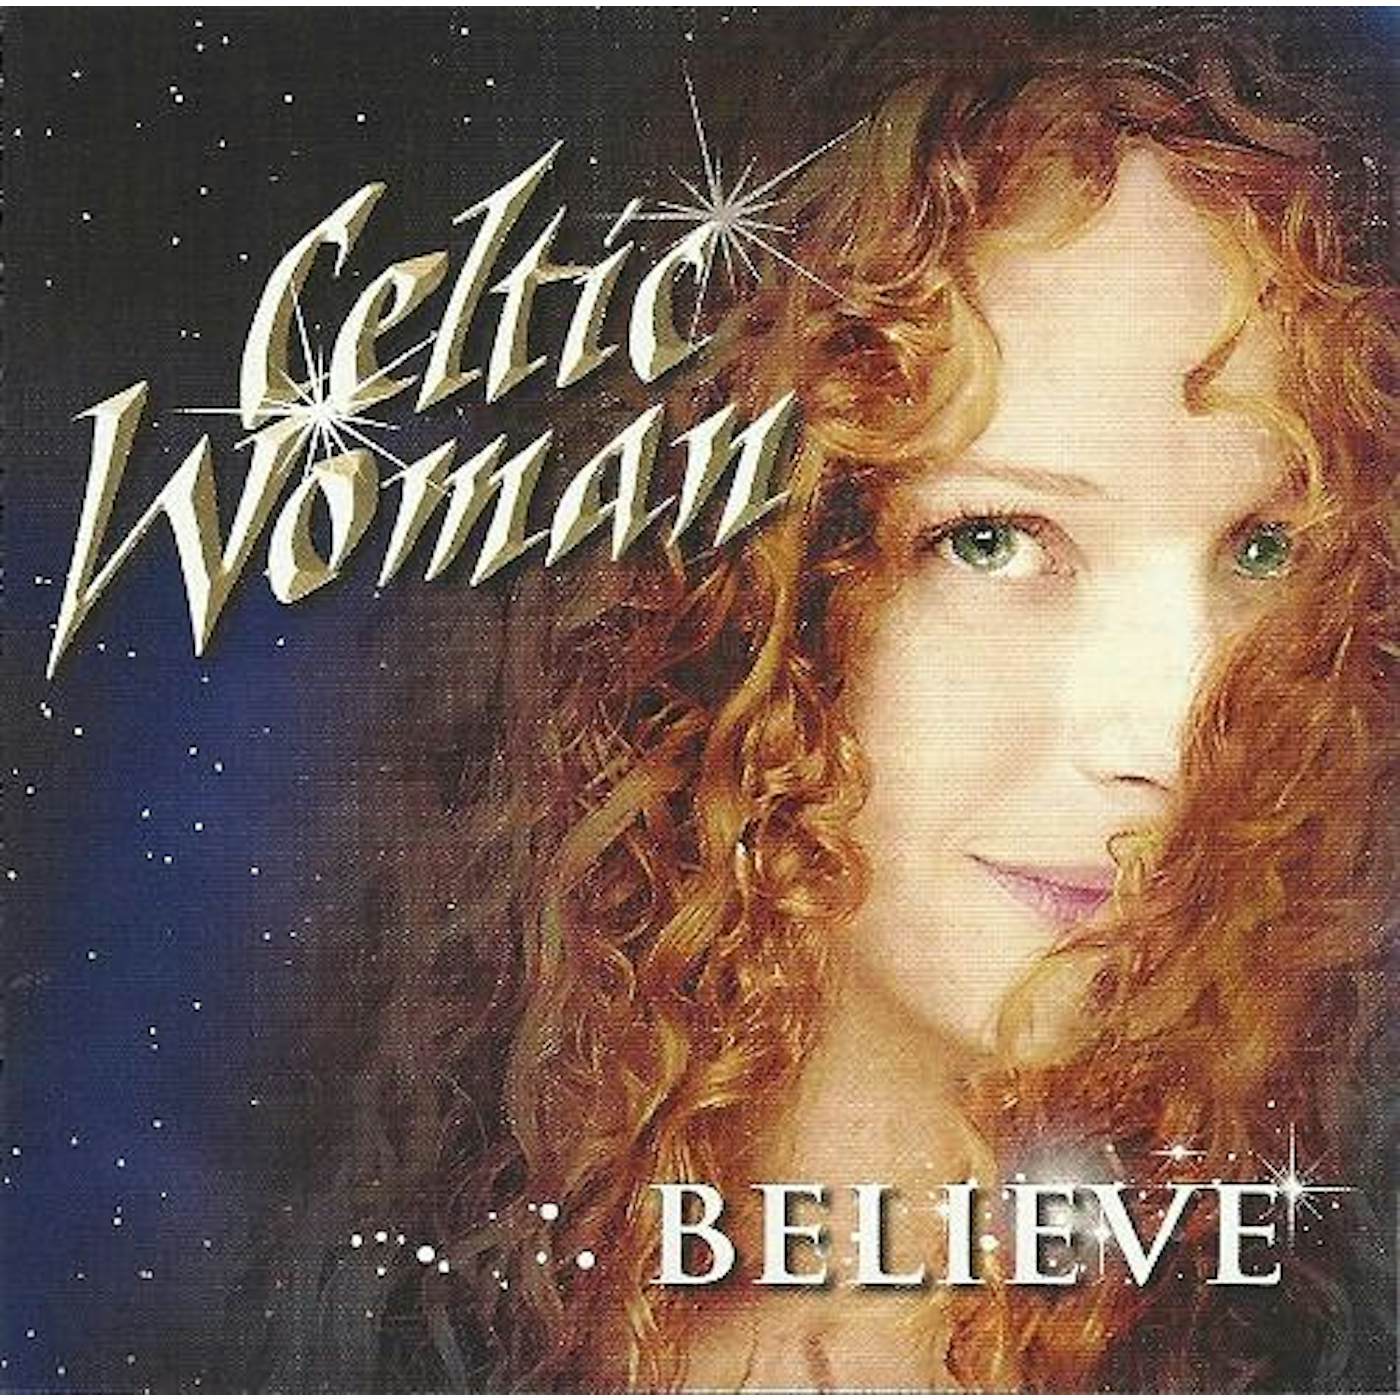 Celtic Woman BELIEVE CD